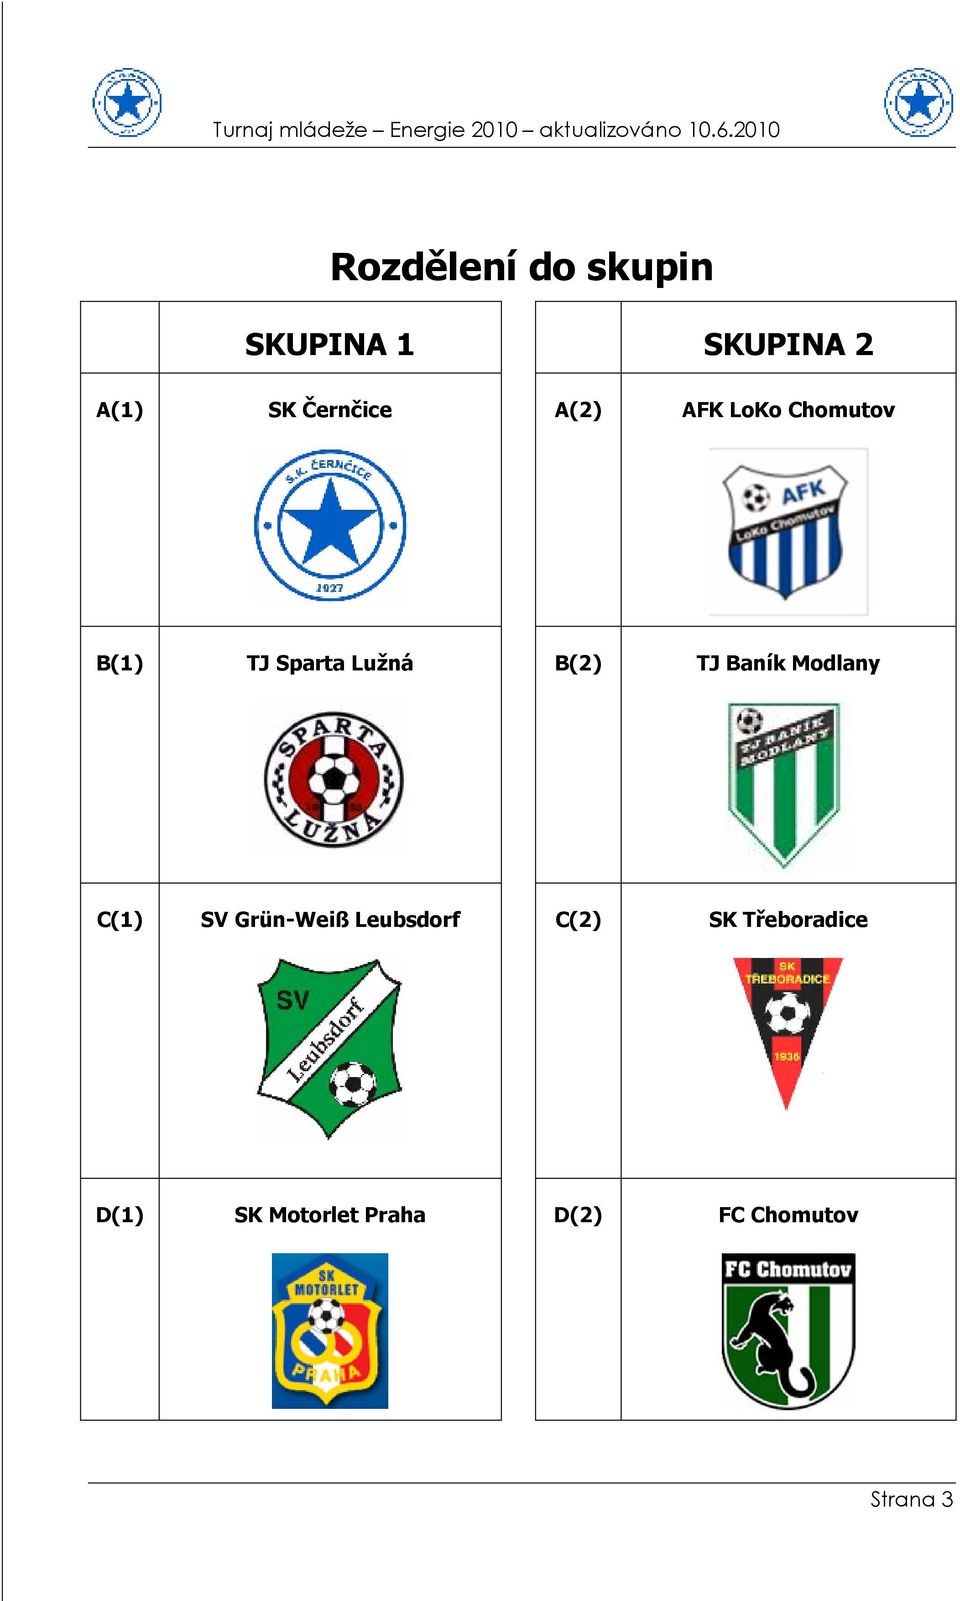 B(2) TJ Baník Modlany C(1) SV Grün-Weiß Leubsdorf C(2)